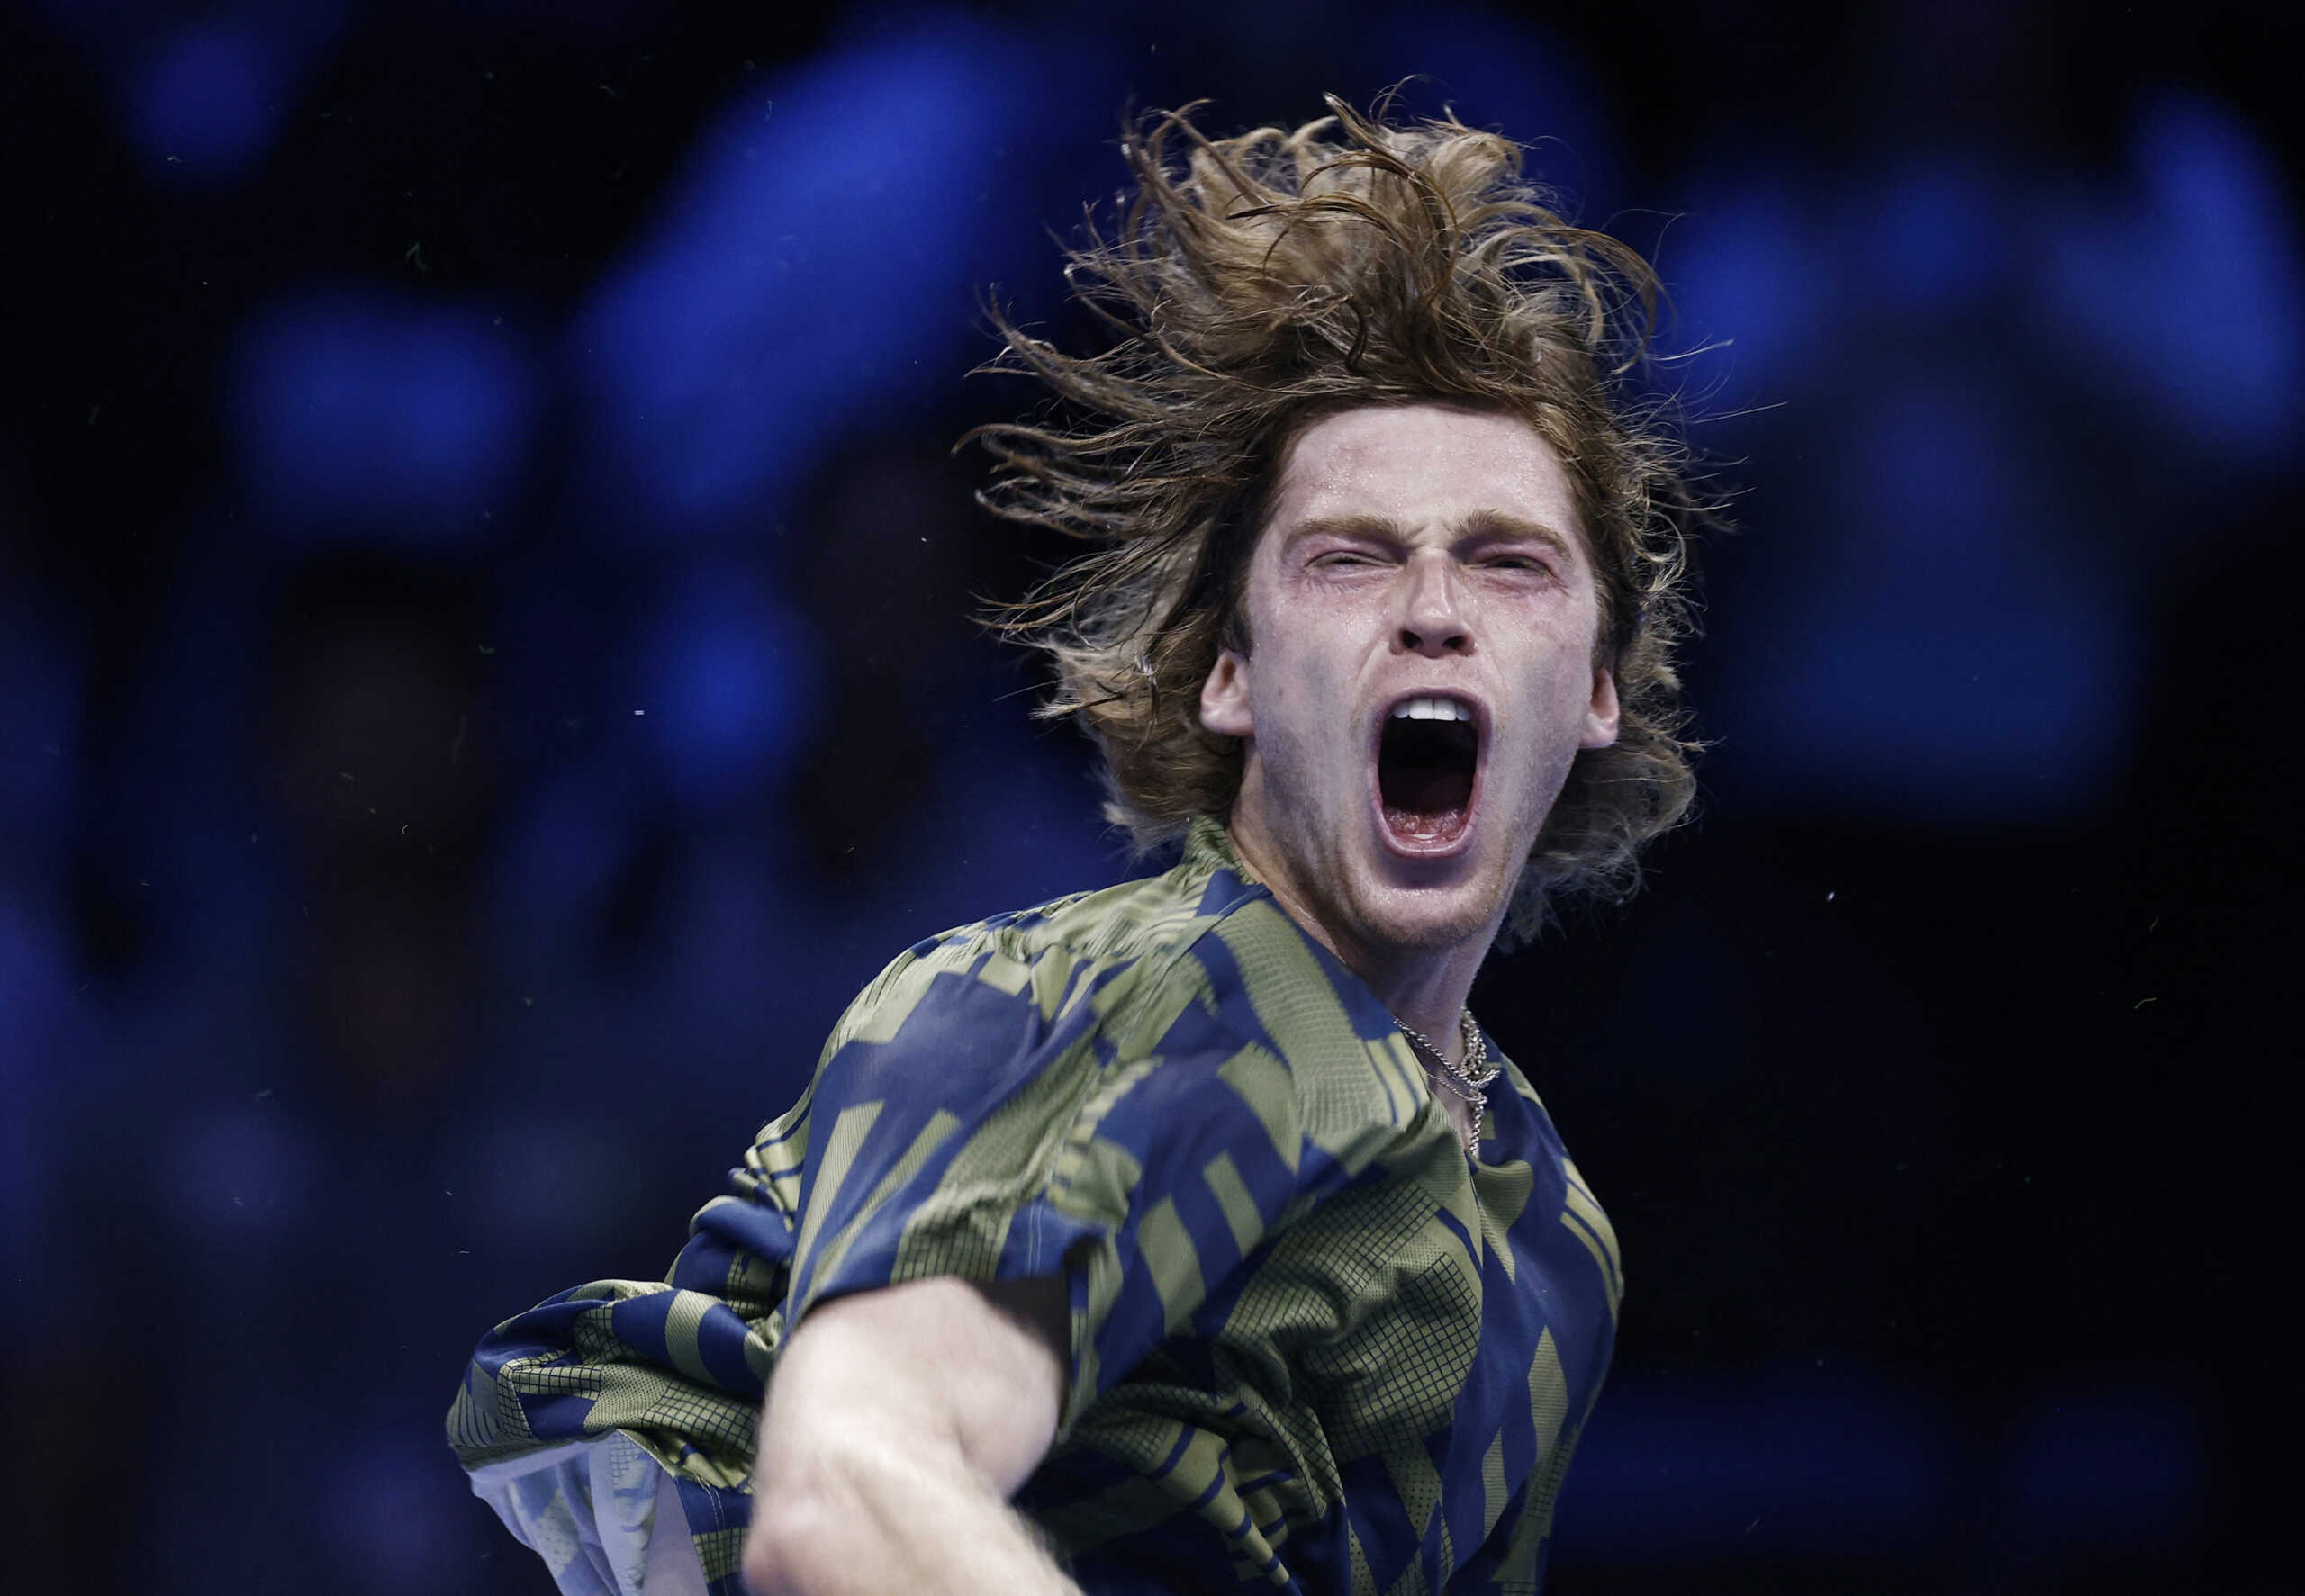 Ντανιίλ Μεντβέντεφ – Αντρέι Ρούμπλεφ 1-2: Δύσκολη νίκη στον όμιλο του ATP Finals που βρίσκεται ο Στέφανος Τσιτσιπάς